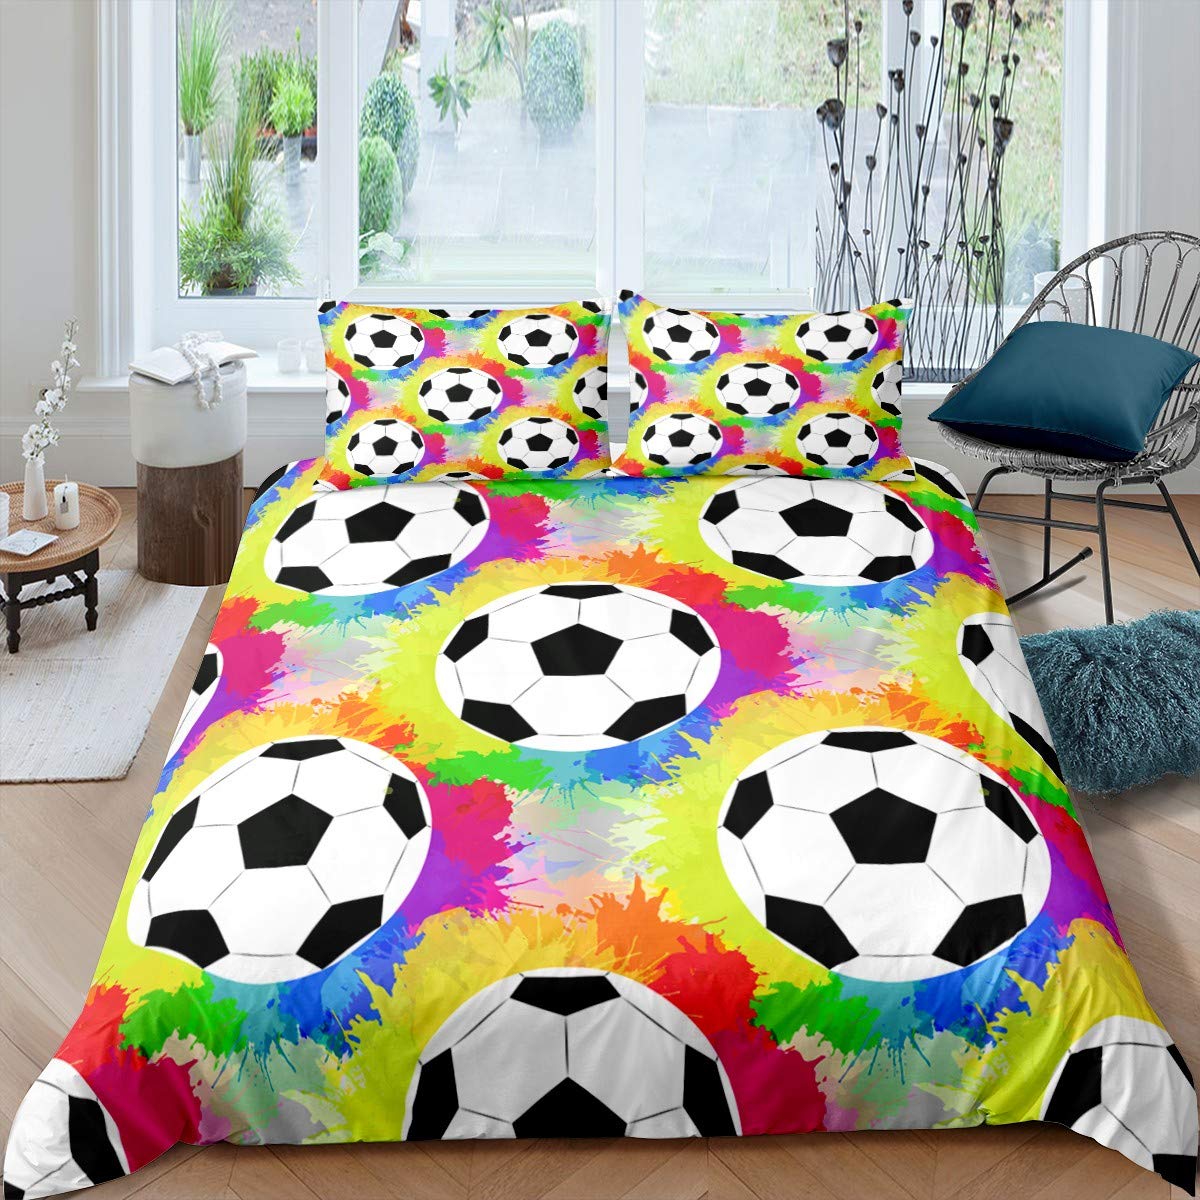 Copertina di piumone da calcio set pattern da pallina da calcio Sports a tema set di biancheria da letto in microfibra colorata cover trapunta doppia king